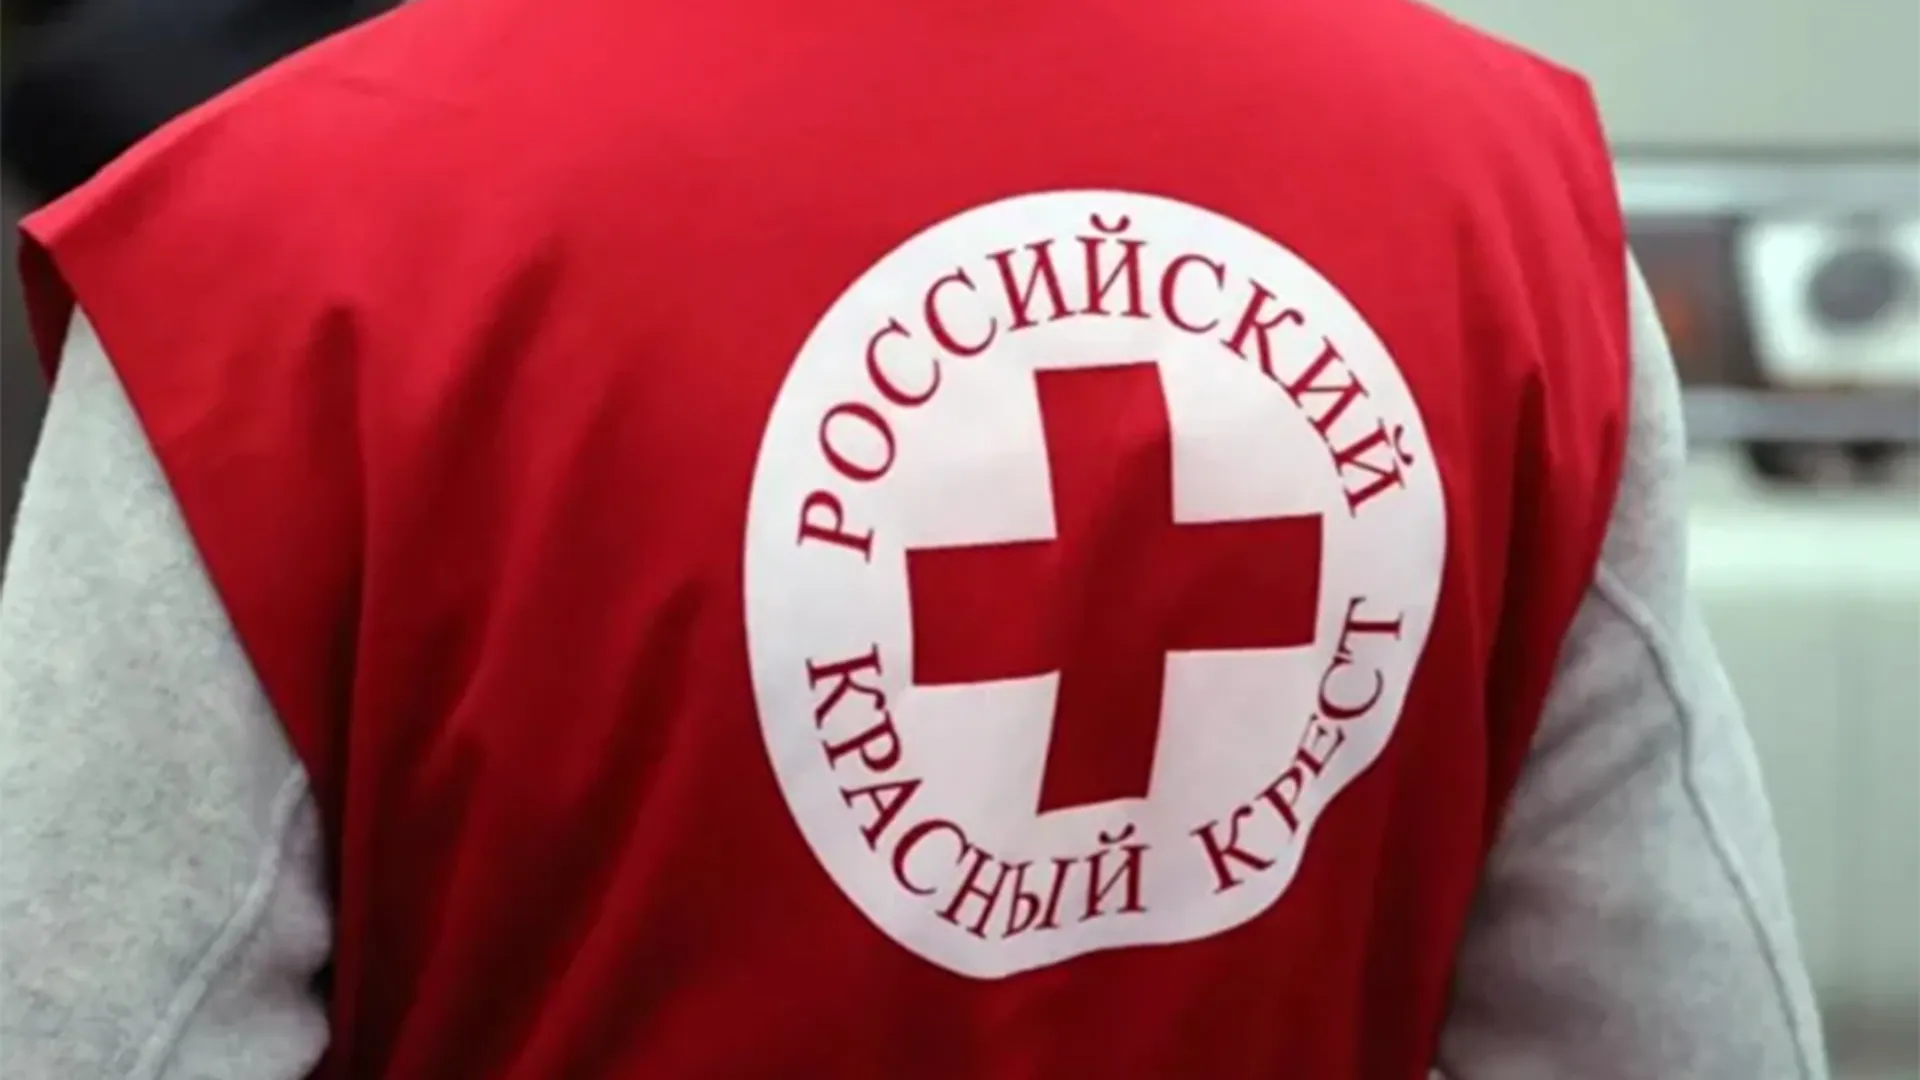 «Людям требовалась помощь здесь и сейчас»: руководитель Красного Креста в РФ рассказал о работе в эпоху СВО